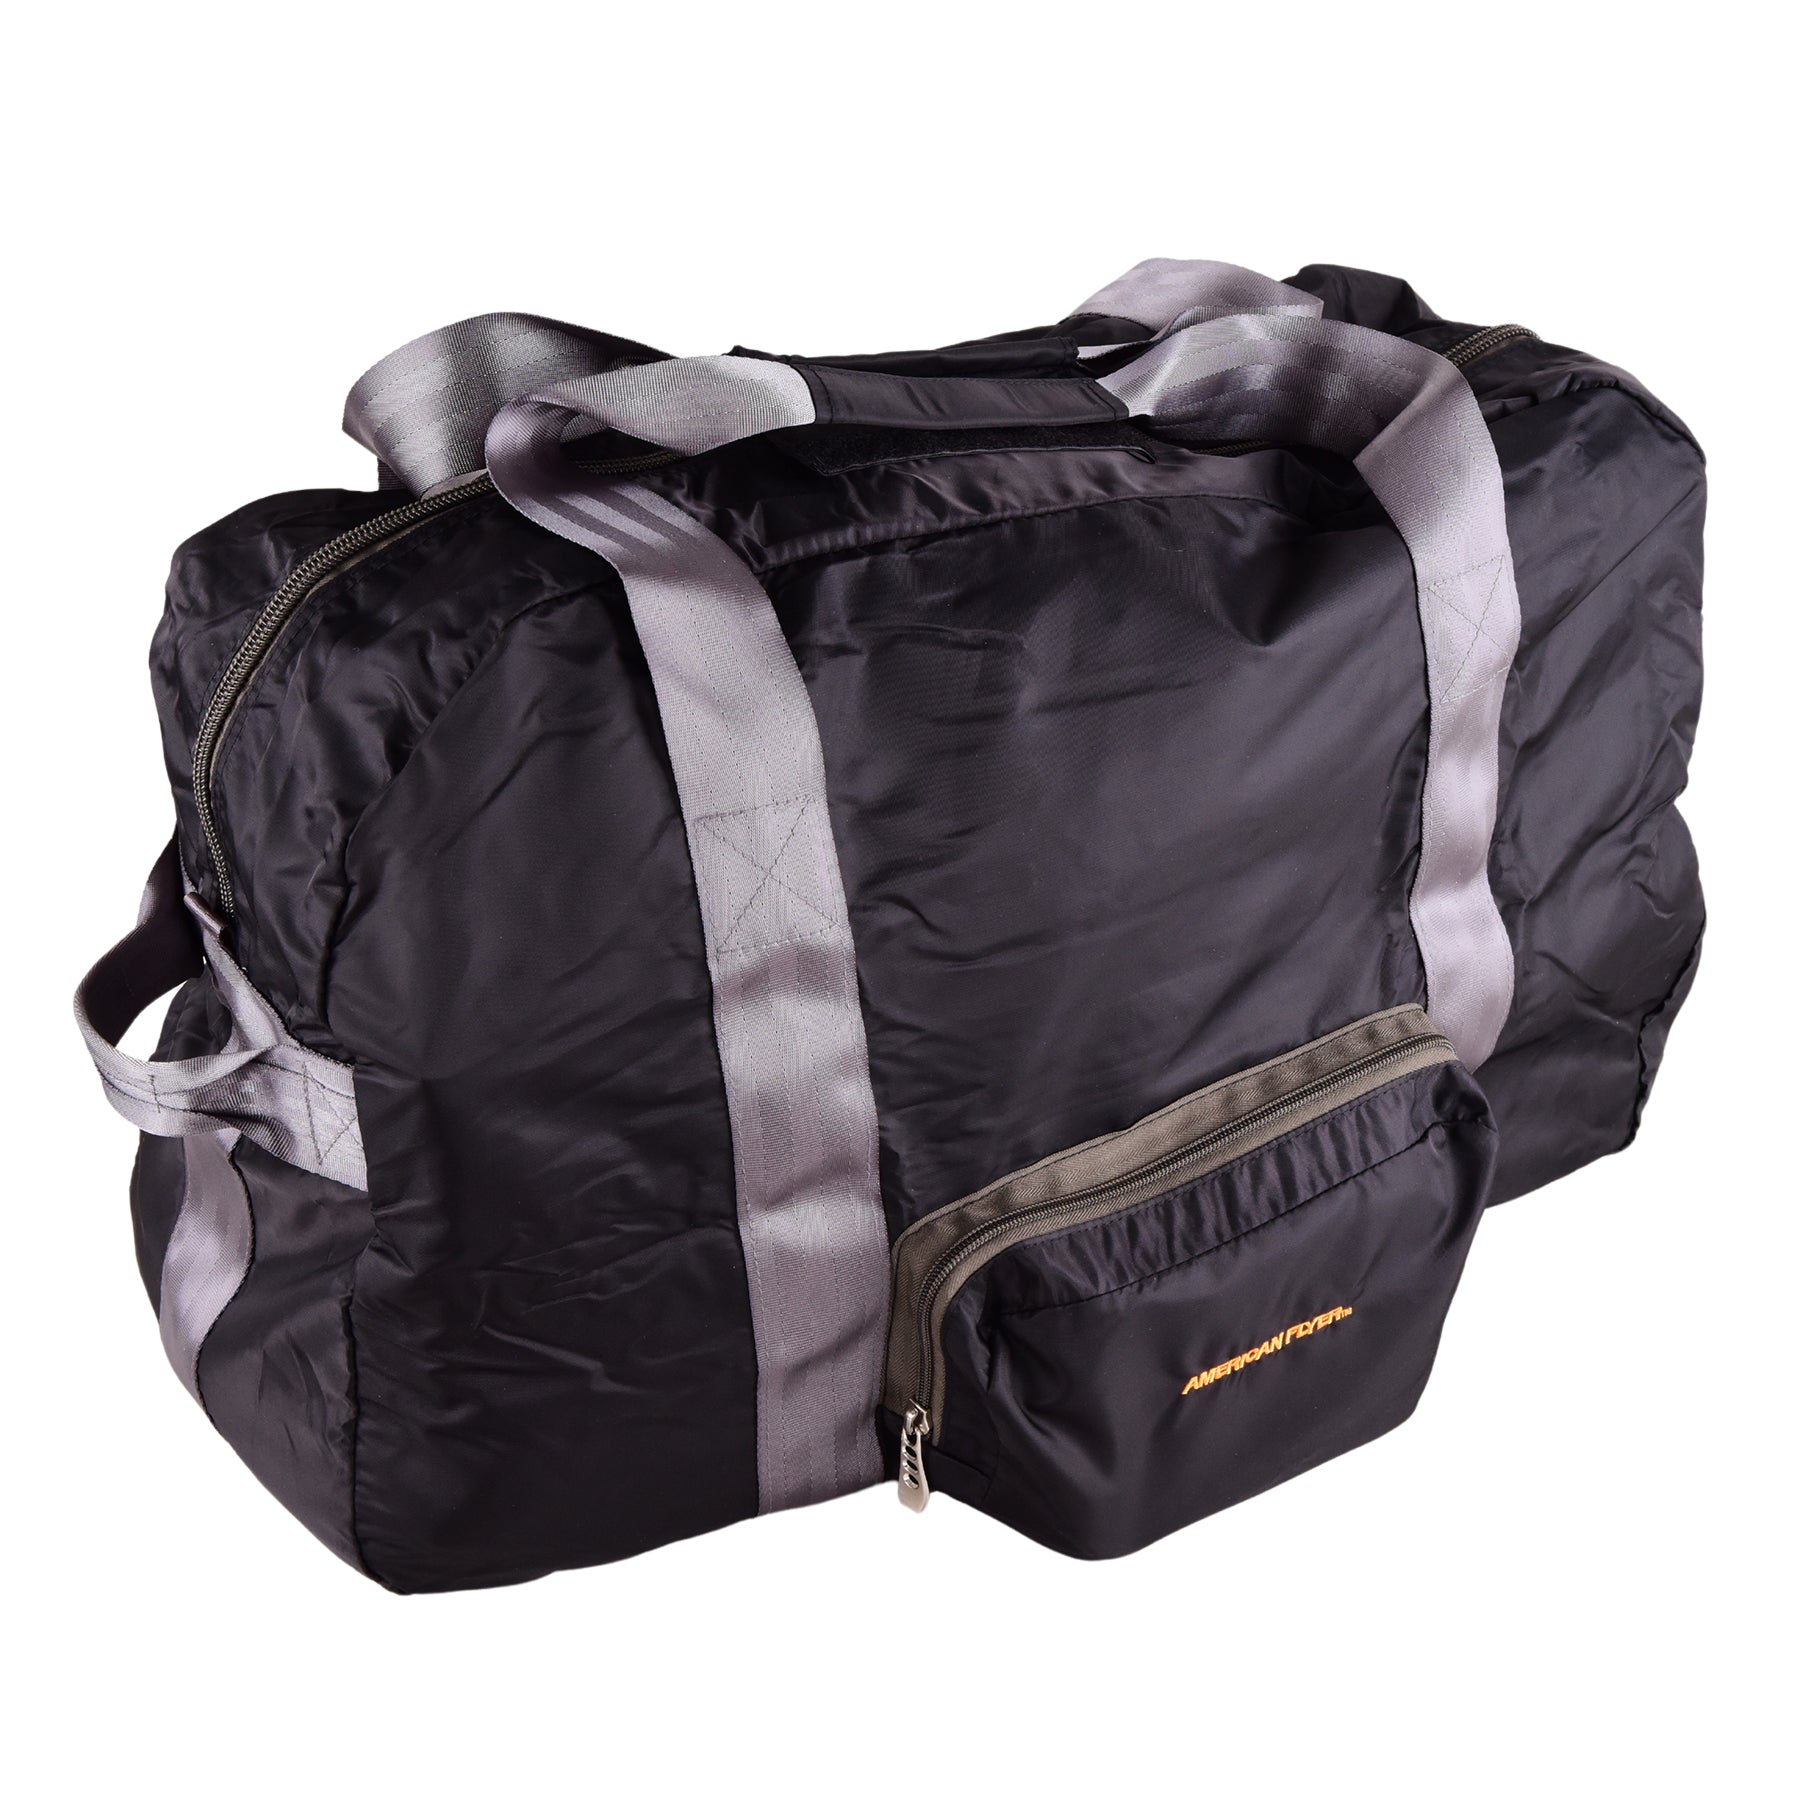 Duffle bag 80 cm Black